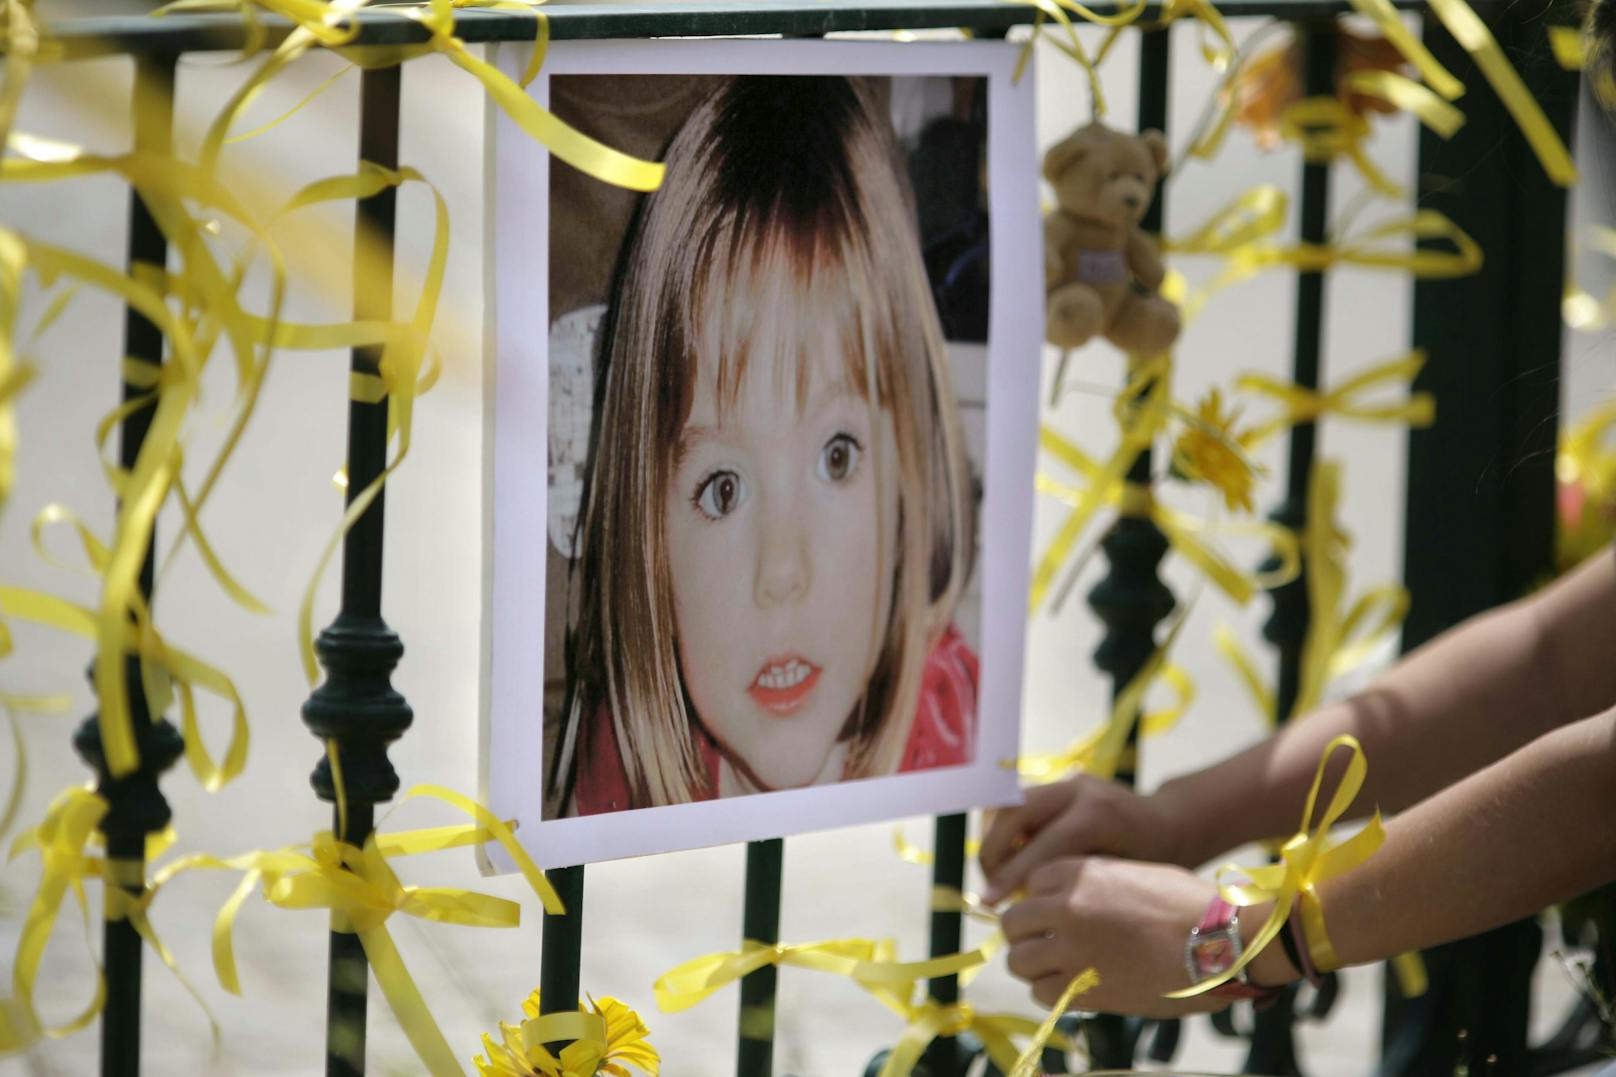 Im Zusammenhang mit dem Verschwinden des damals 3-jährigen britischen Mädchens Madeleine Beth McCann am 3. Mai 2007 aus einer Appartementanlage in Praia da Luz in Portugal ermittelt die Staatsanwaltschaft Braunschweig gegen einen 43-jährigen deutschen Staatsangehörigen wegen des Verdachts des Mordes.